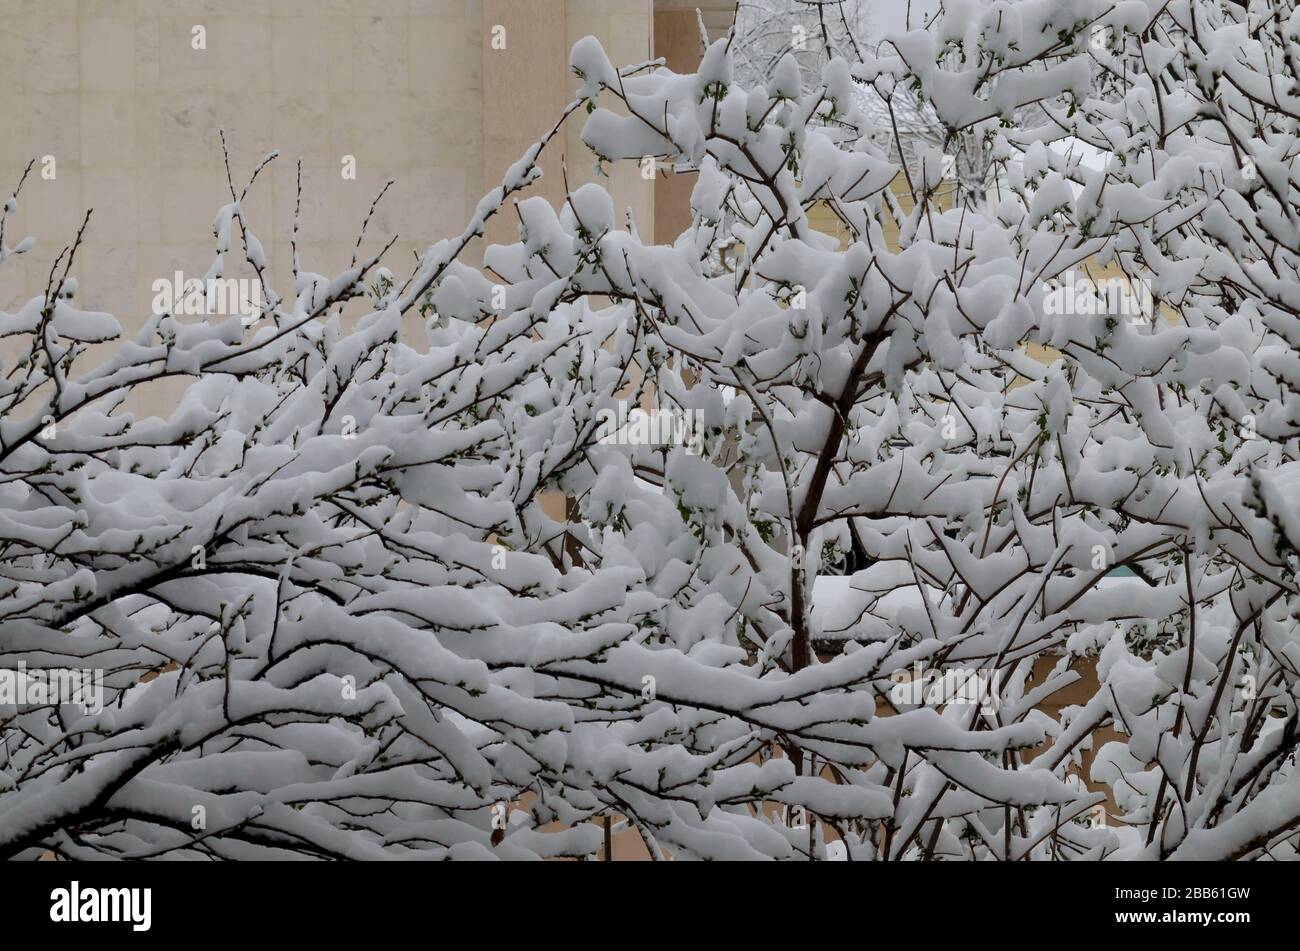 Die COVID-19-Corona-Virus-Pandemie, der Ausnahmezustand und der verzögerte, starke Schneefall an Baumzweigen, Sofia, Bulgarien Stockfoto